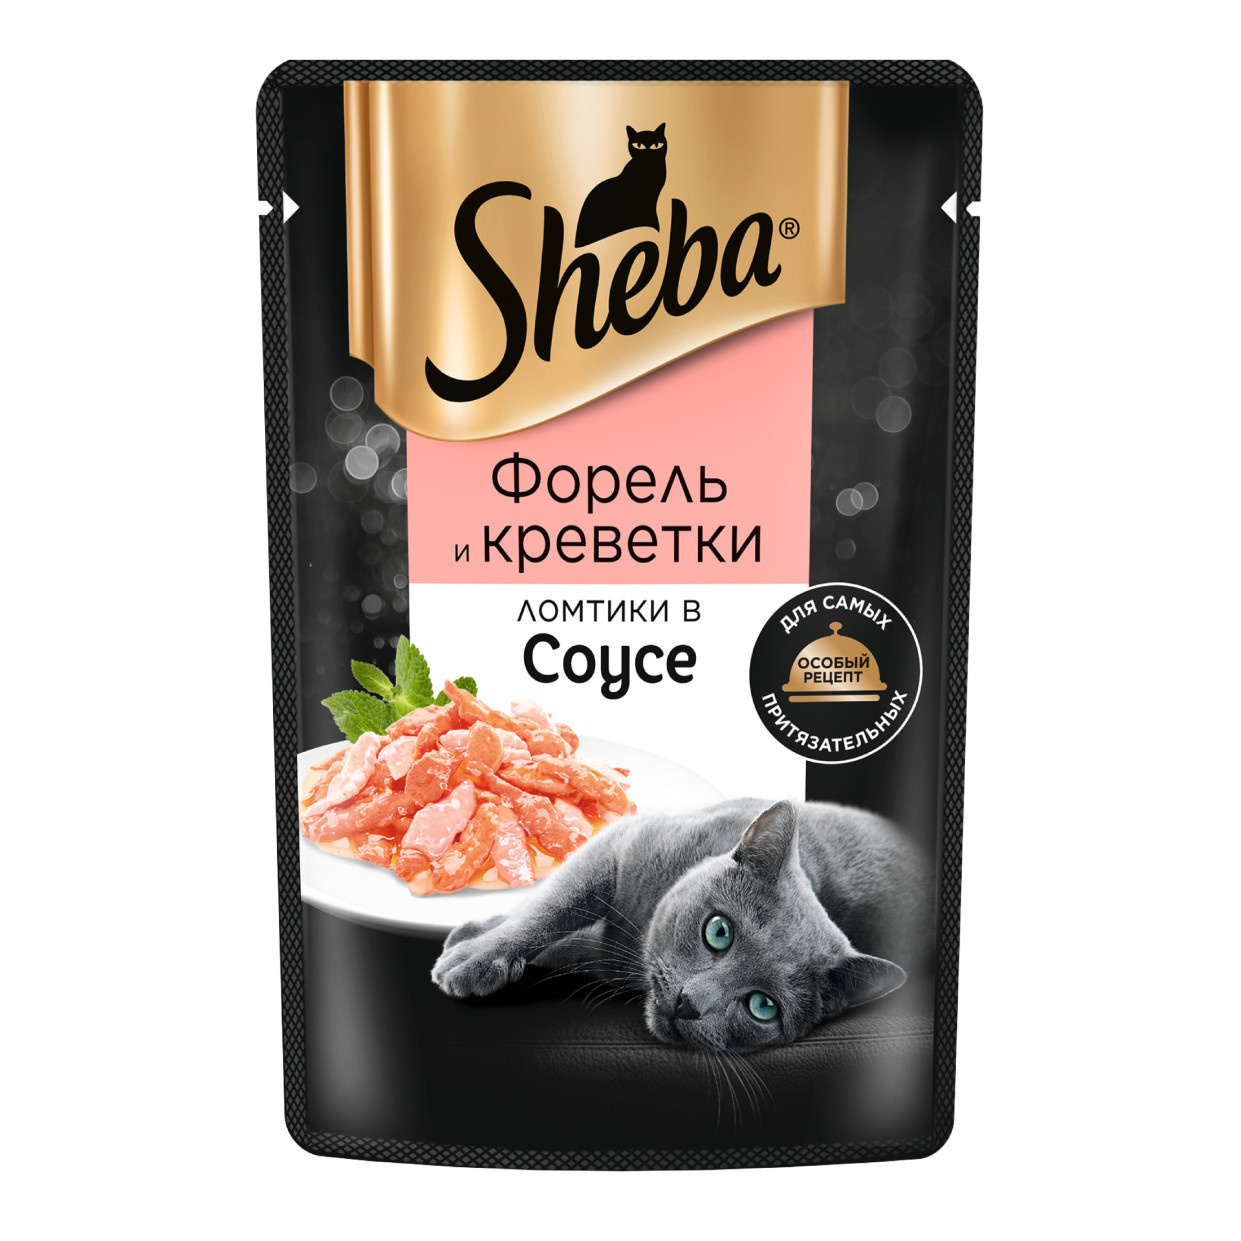 Sheba Sheba влажный корм для кошек «Ломтики в соусе, с форелью и креветками» (75 г)